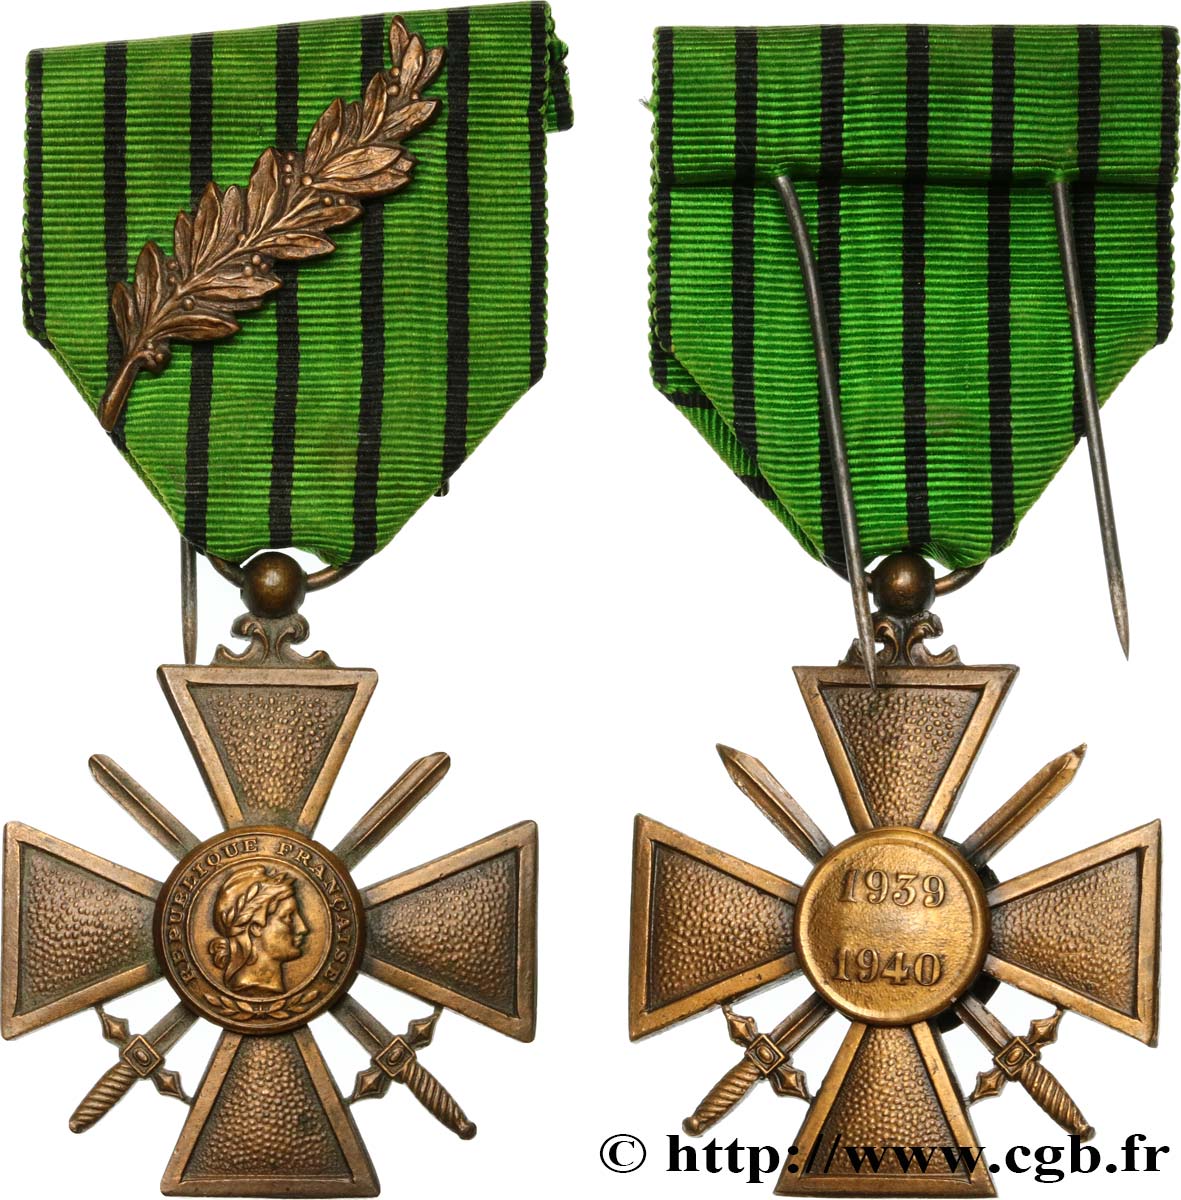 ETAT FRANÇAIS Croix de guerre de l’État français fVZ